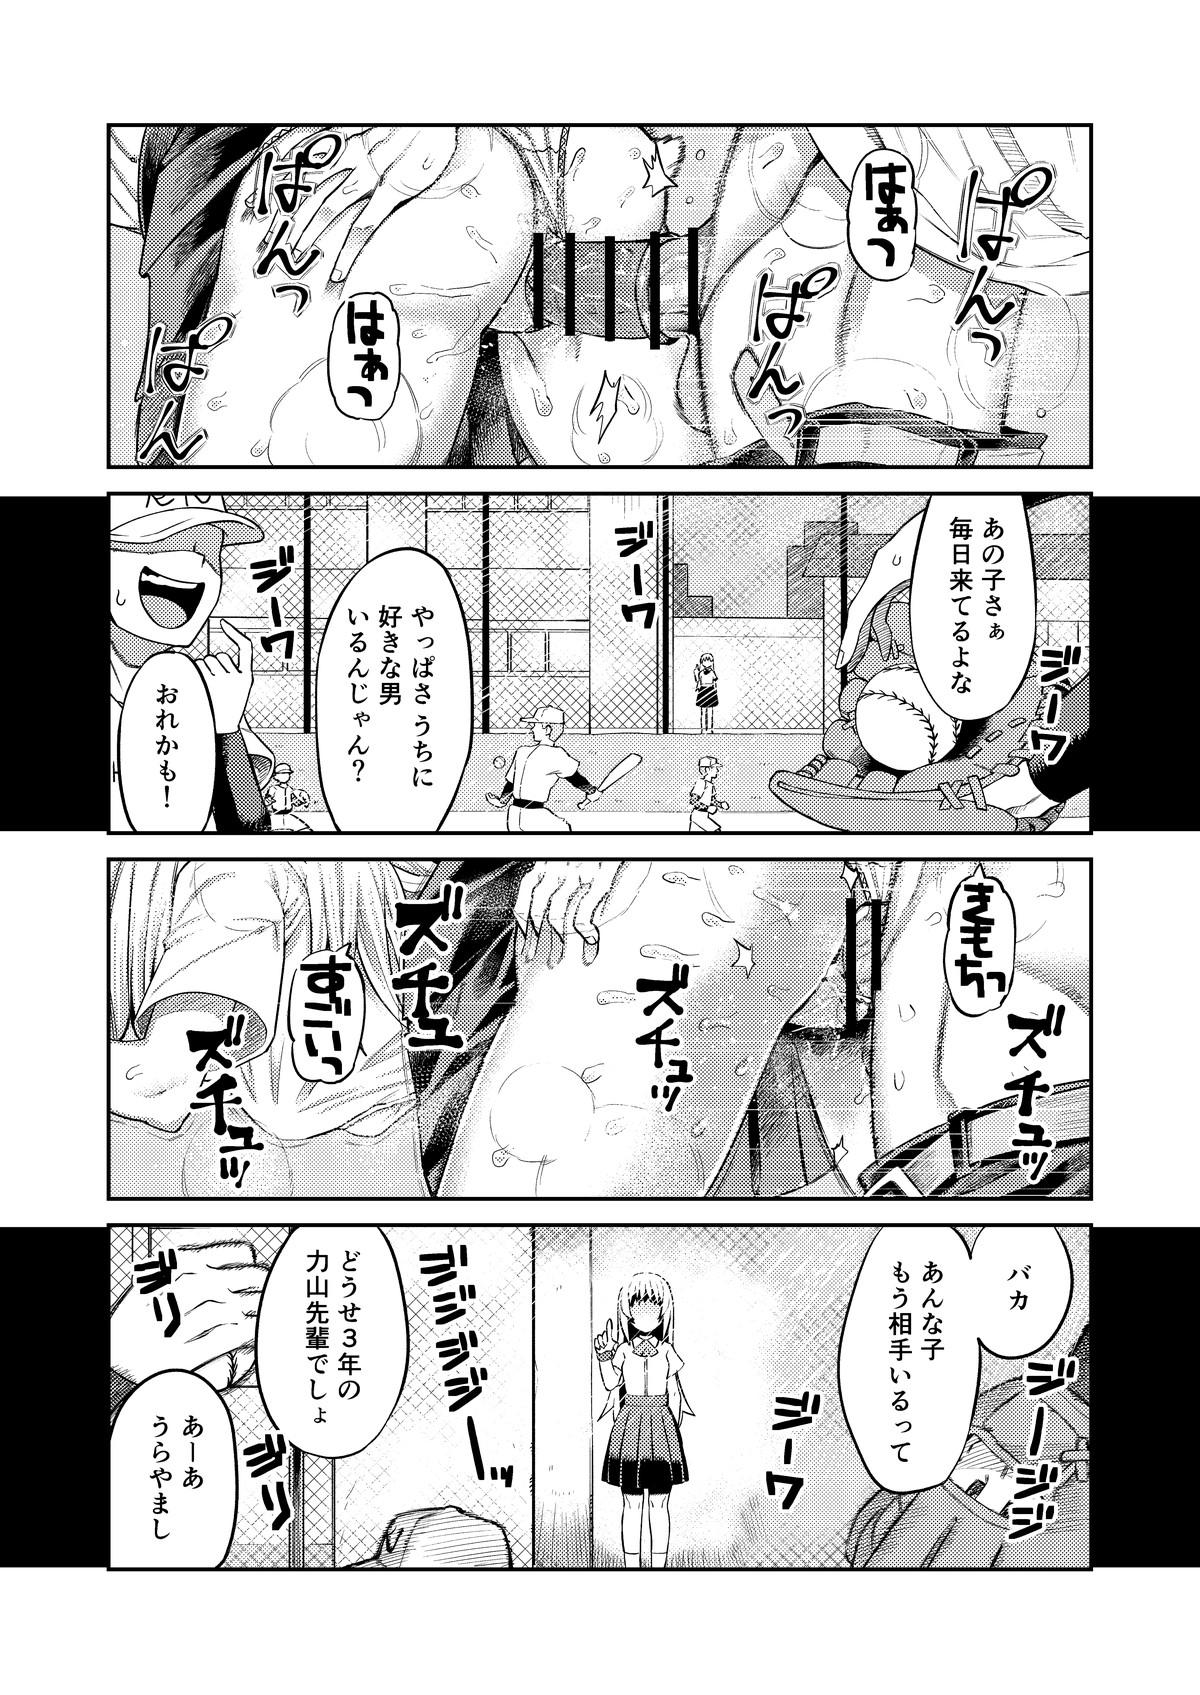 Suckingdick Riyū wa fumeidaga etchi shite kureru kōhai - Original Blow Jobs - Page 2